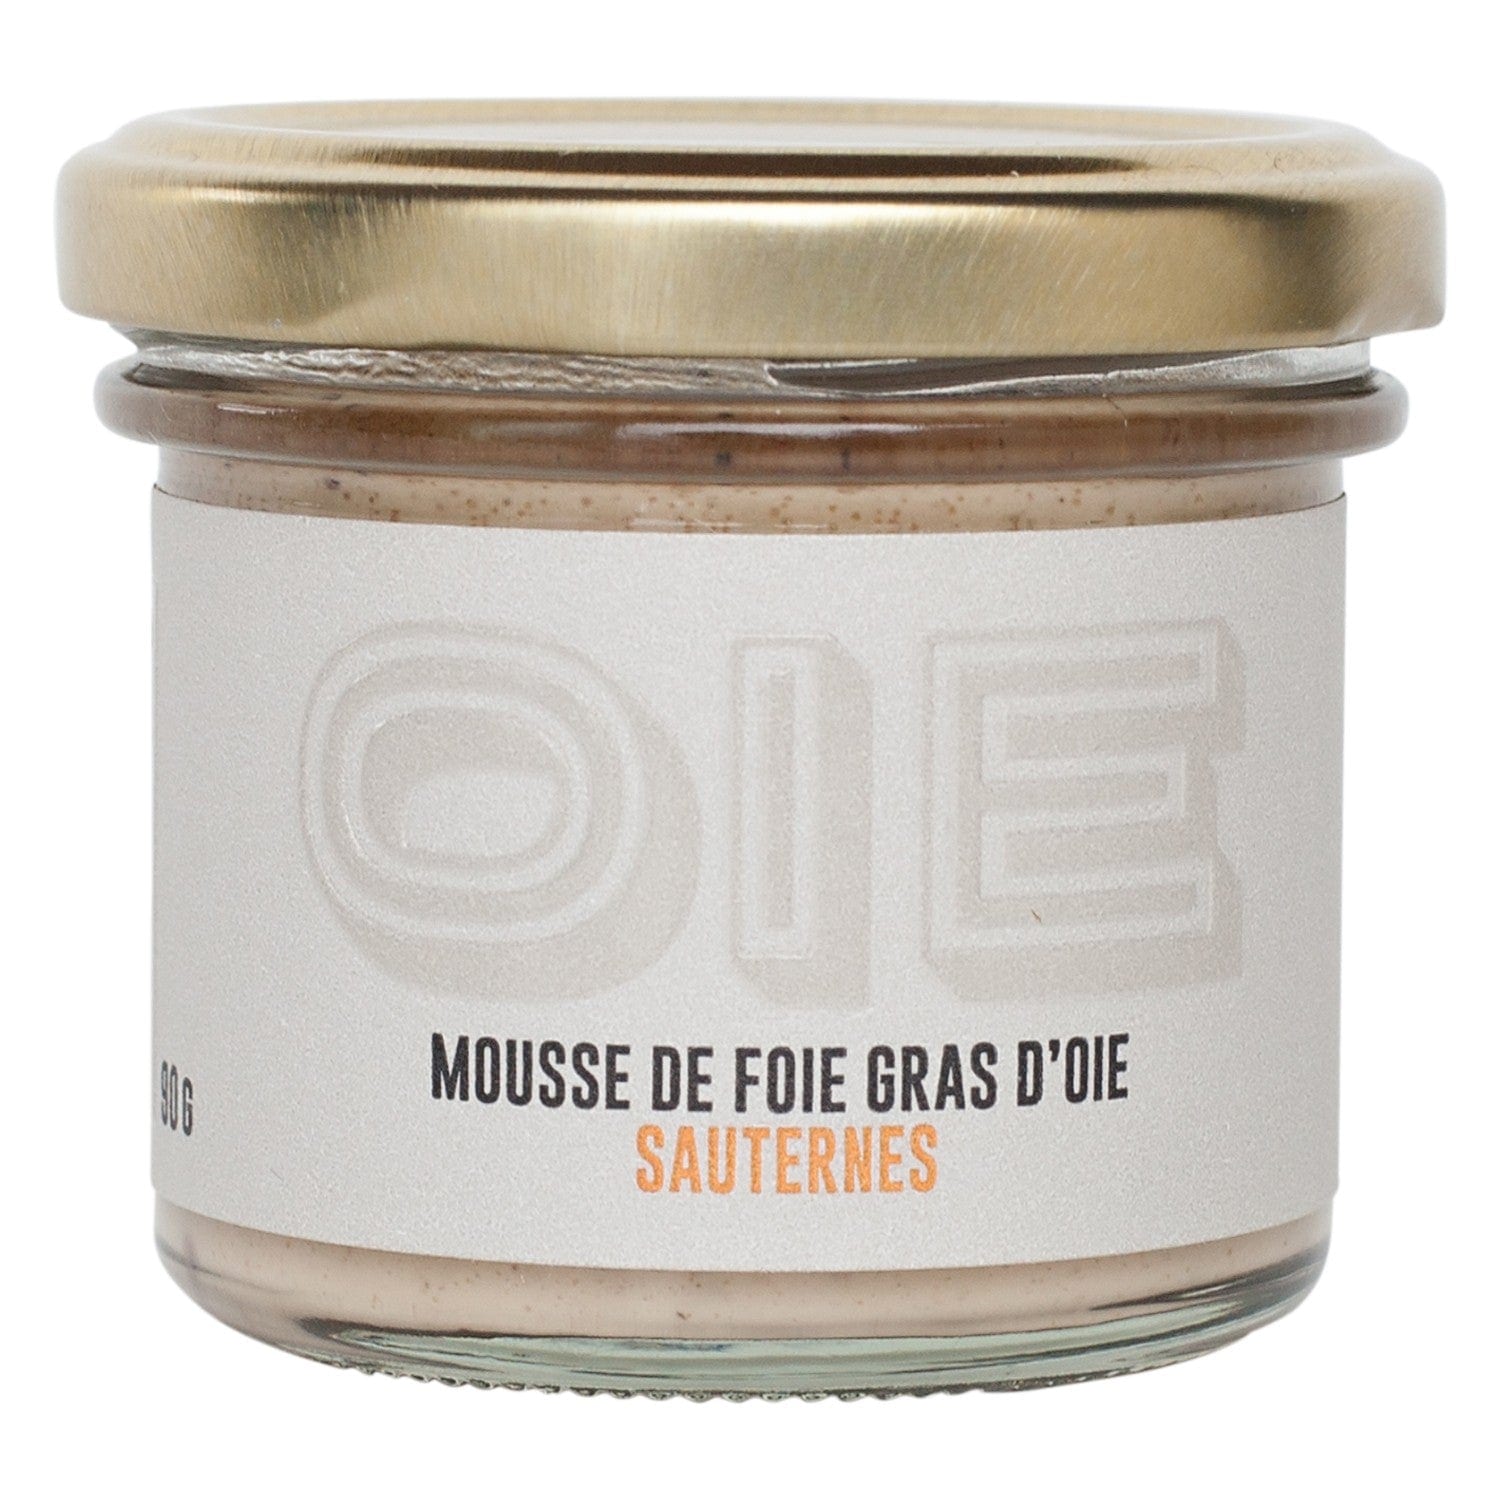 Goose foie gras mousse with Sauternes